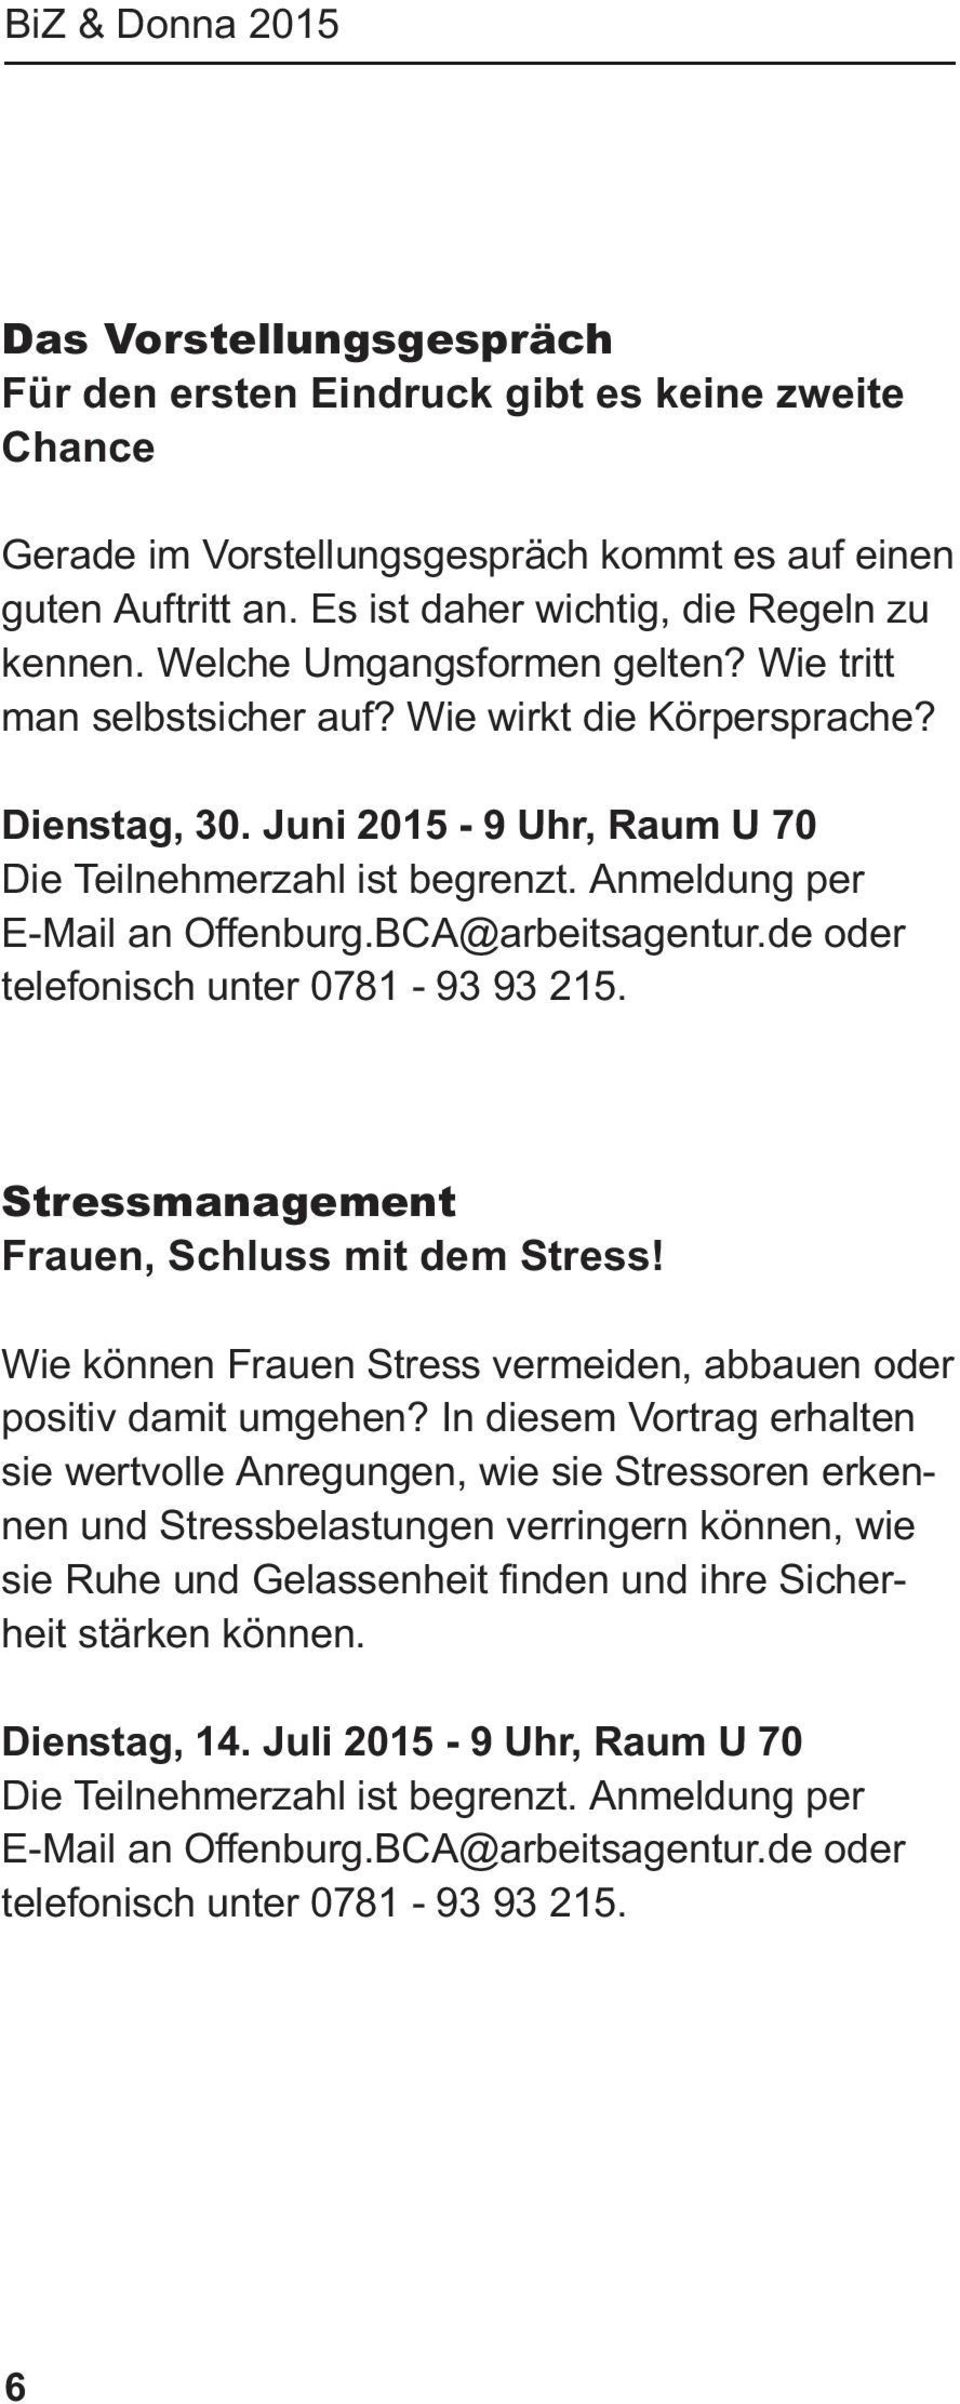 BCA@arbeitsagentur.de oder telefonisch unter 0781-93 93 215. Stressmanagement Frauen, Schluss mit dem Stress! Wie können Frauen Stress vermeiden, abbauen oder positiv damit umgehen?